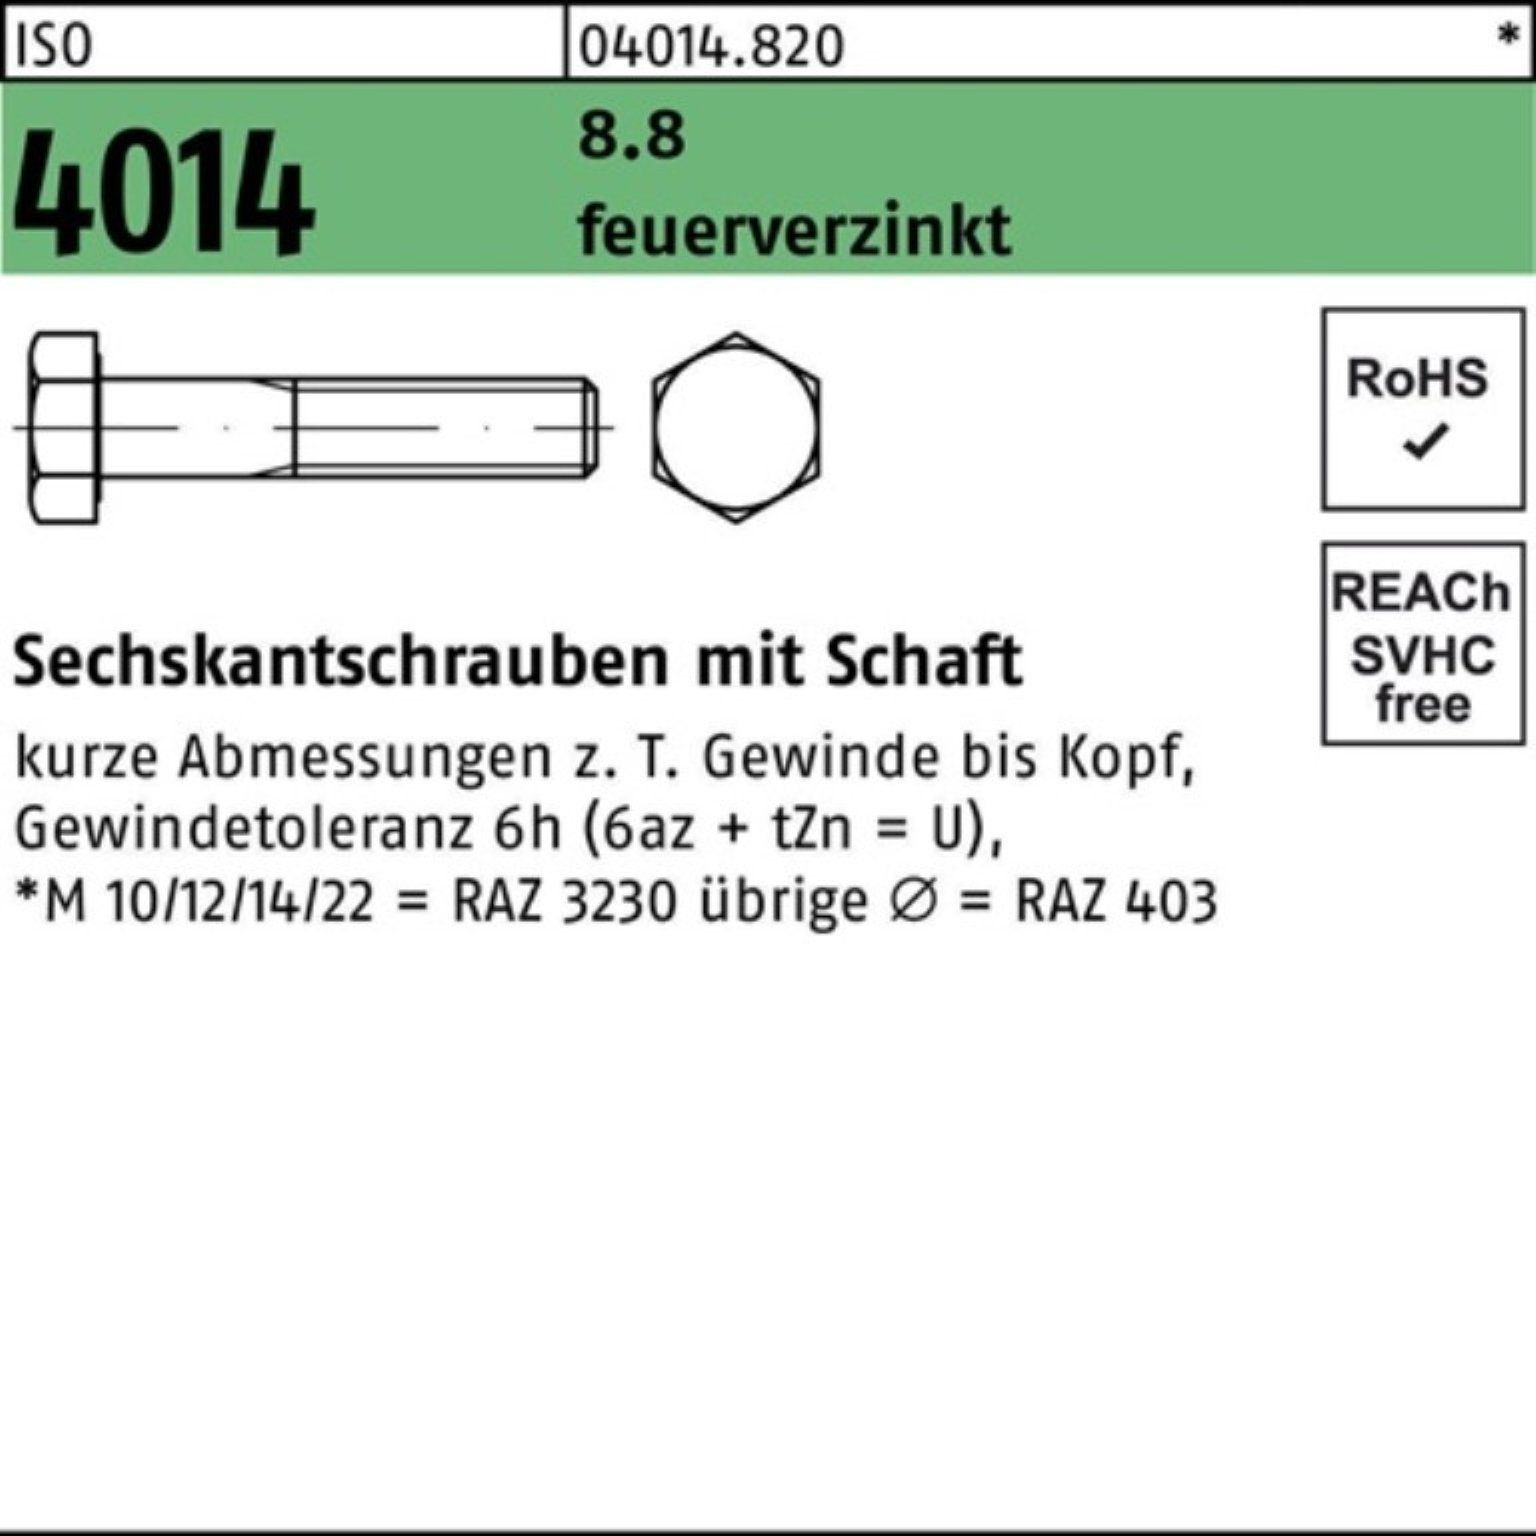 Sechskantschraube Schaft 100er 1 140 4014 8.8 M27x Sechskantschraube feuerverz. Pack ISO Bufab